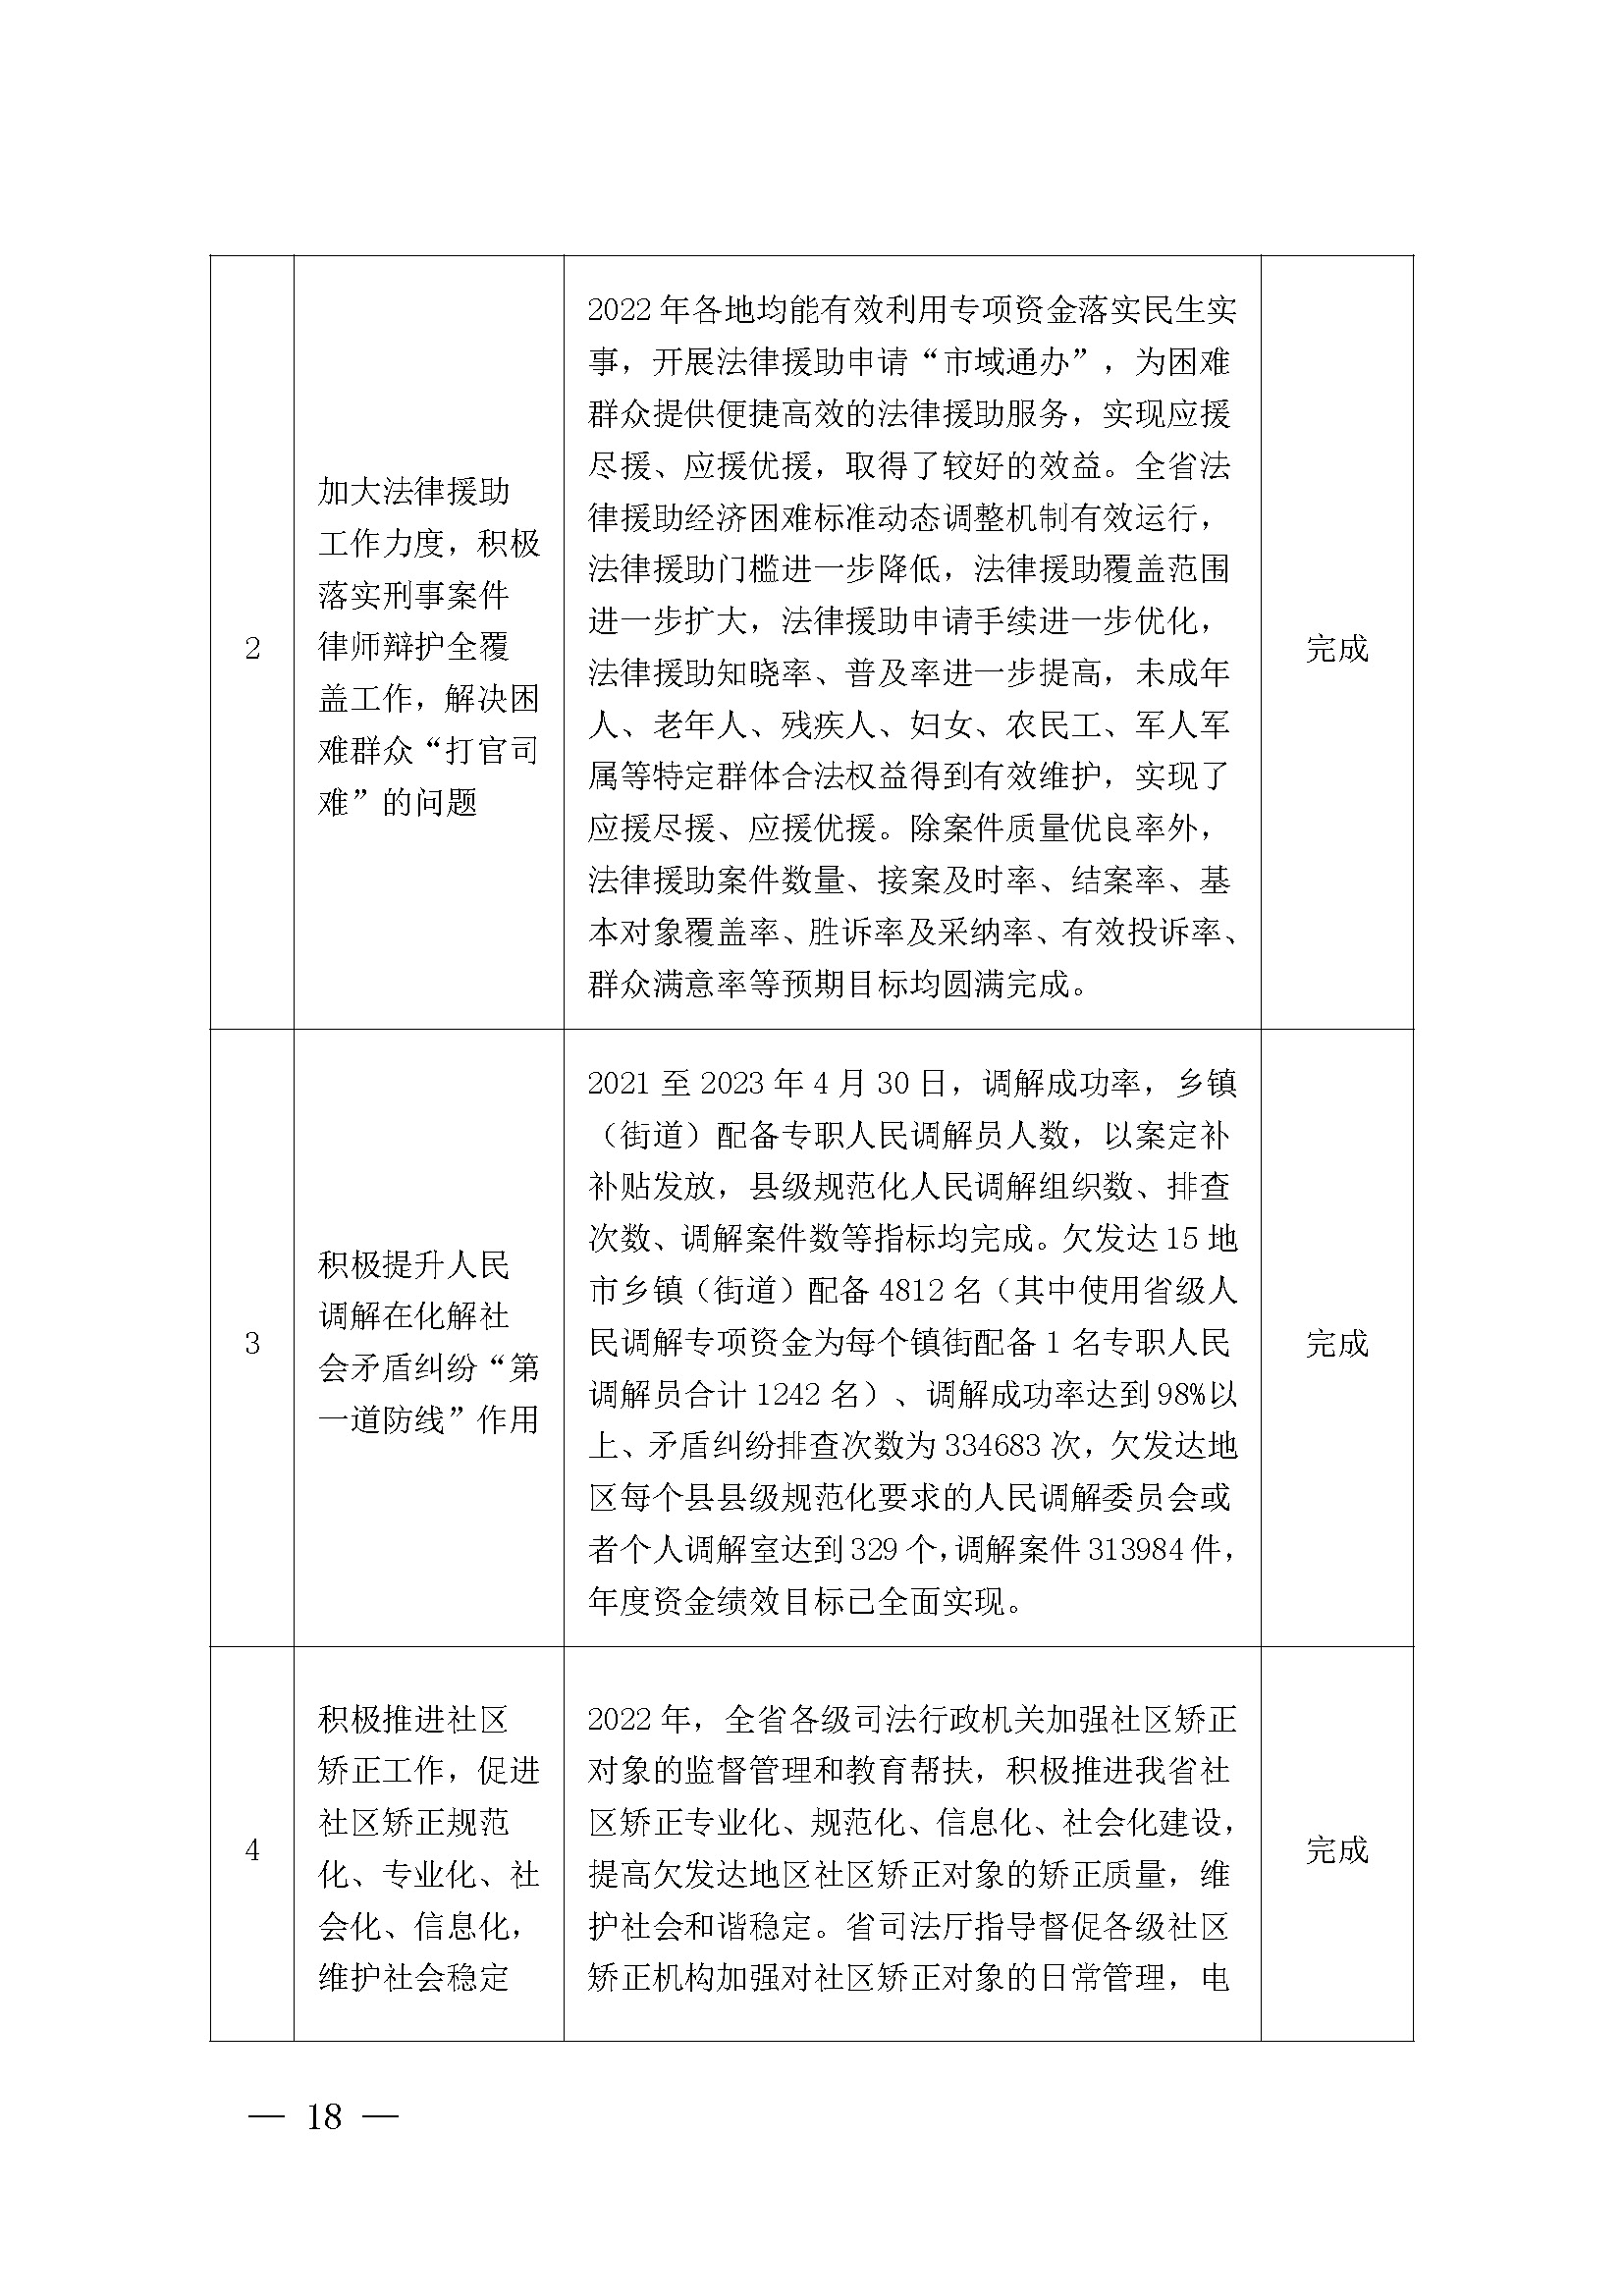 广东省司法厅2022年度部门整体支出绩效自评报告_页面_18.jpg